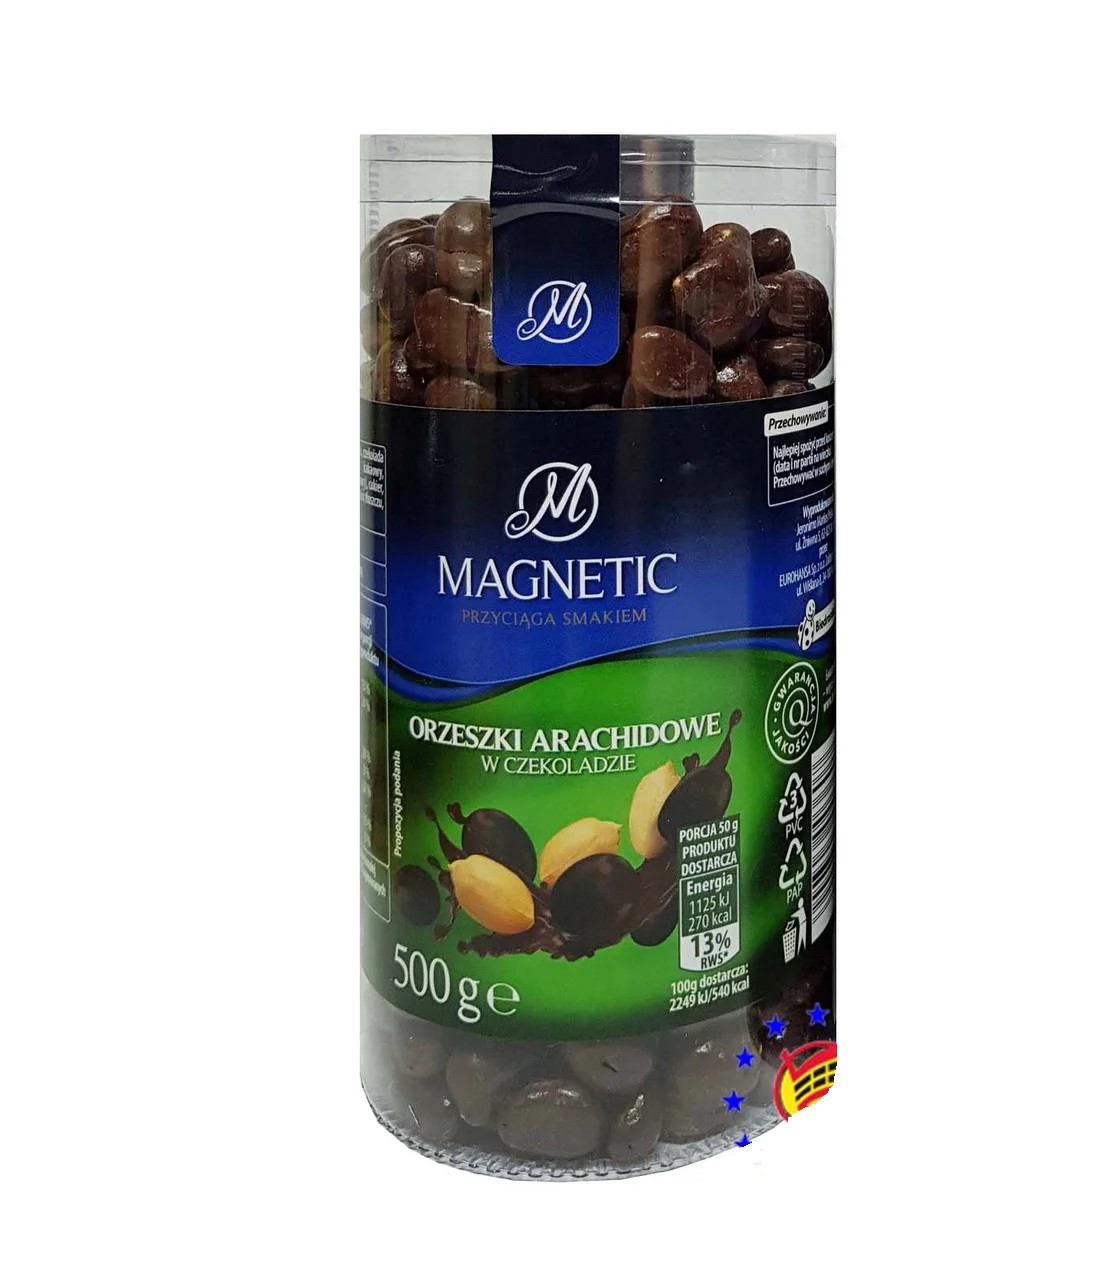 Арахіс у шоколаді Magnetic 420 г Польща (опт 3 шт.)